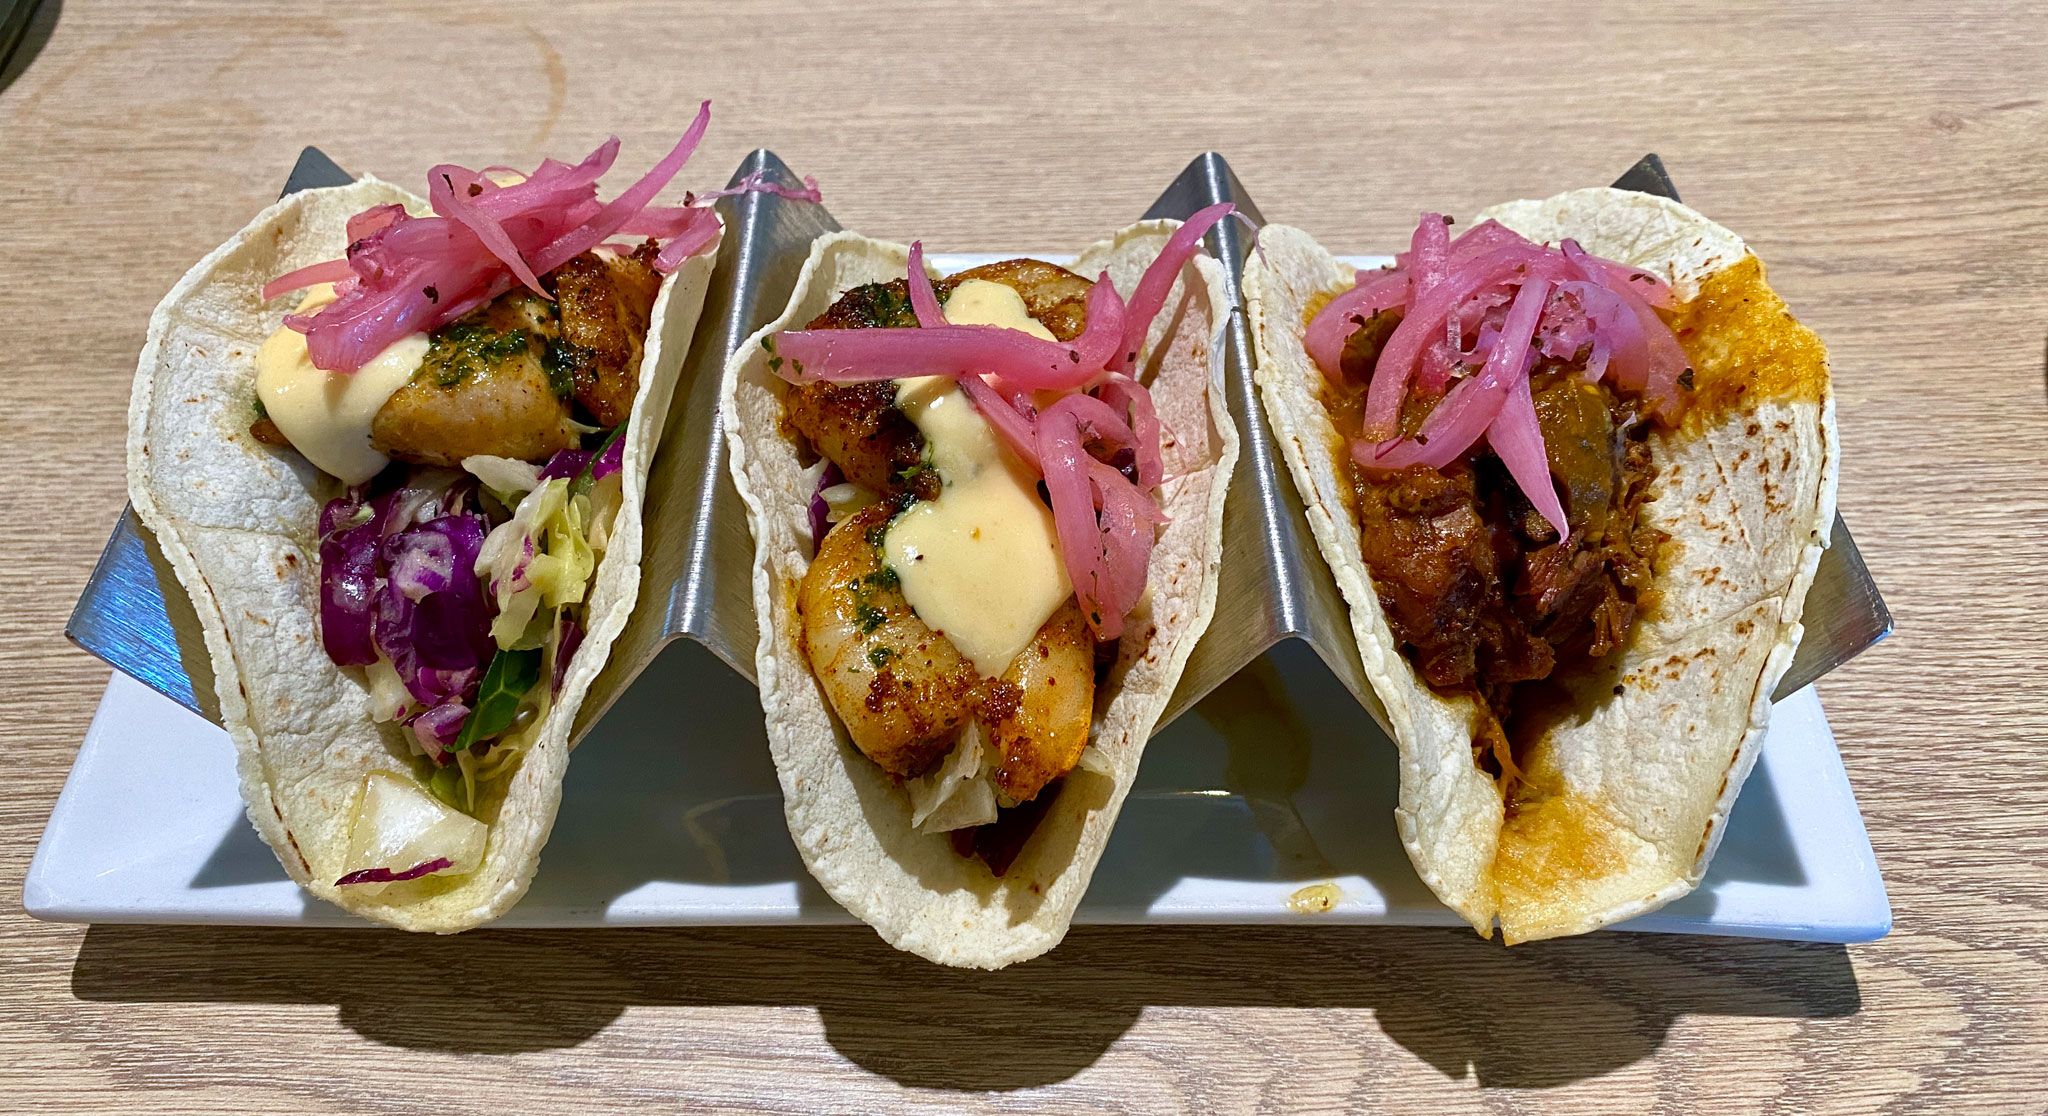 Pescado, Shrimp, and Carnitas Tacos